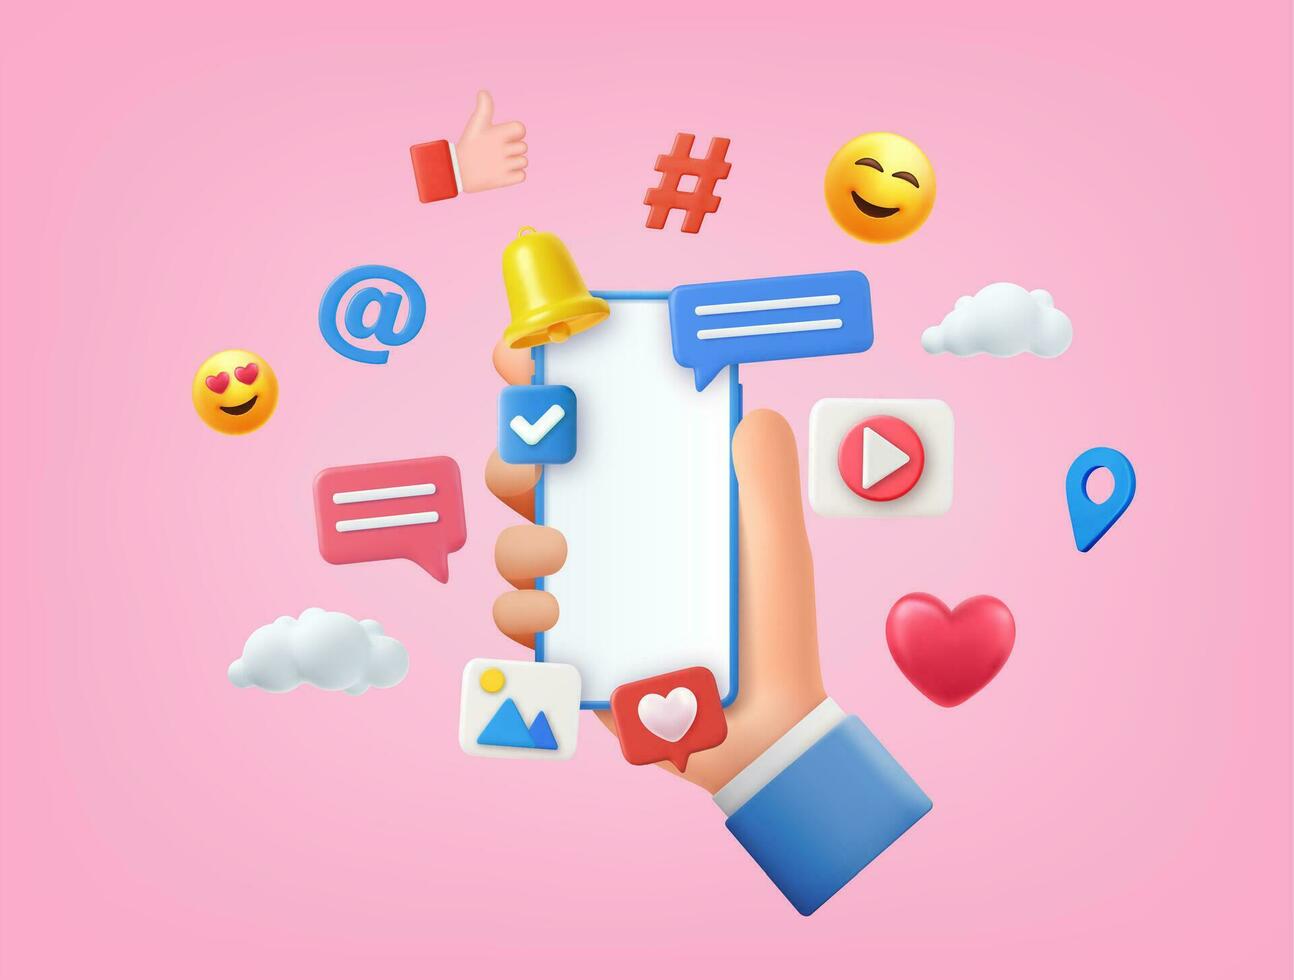 3d online sociaal media communicatie concept. telefoon met opmerking, video en foto galerij en Speel pictogrammen. hand- Holding telefoon met emoji, opmerking, liefde, Leuk vinden en Speel pictogrammen. vector illustratie